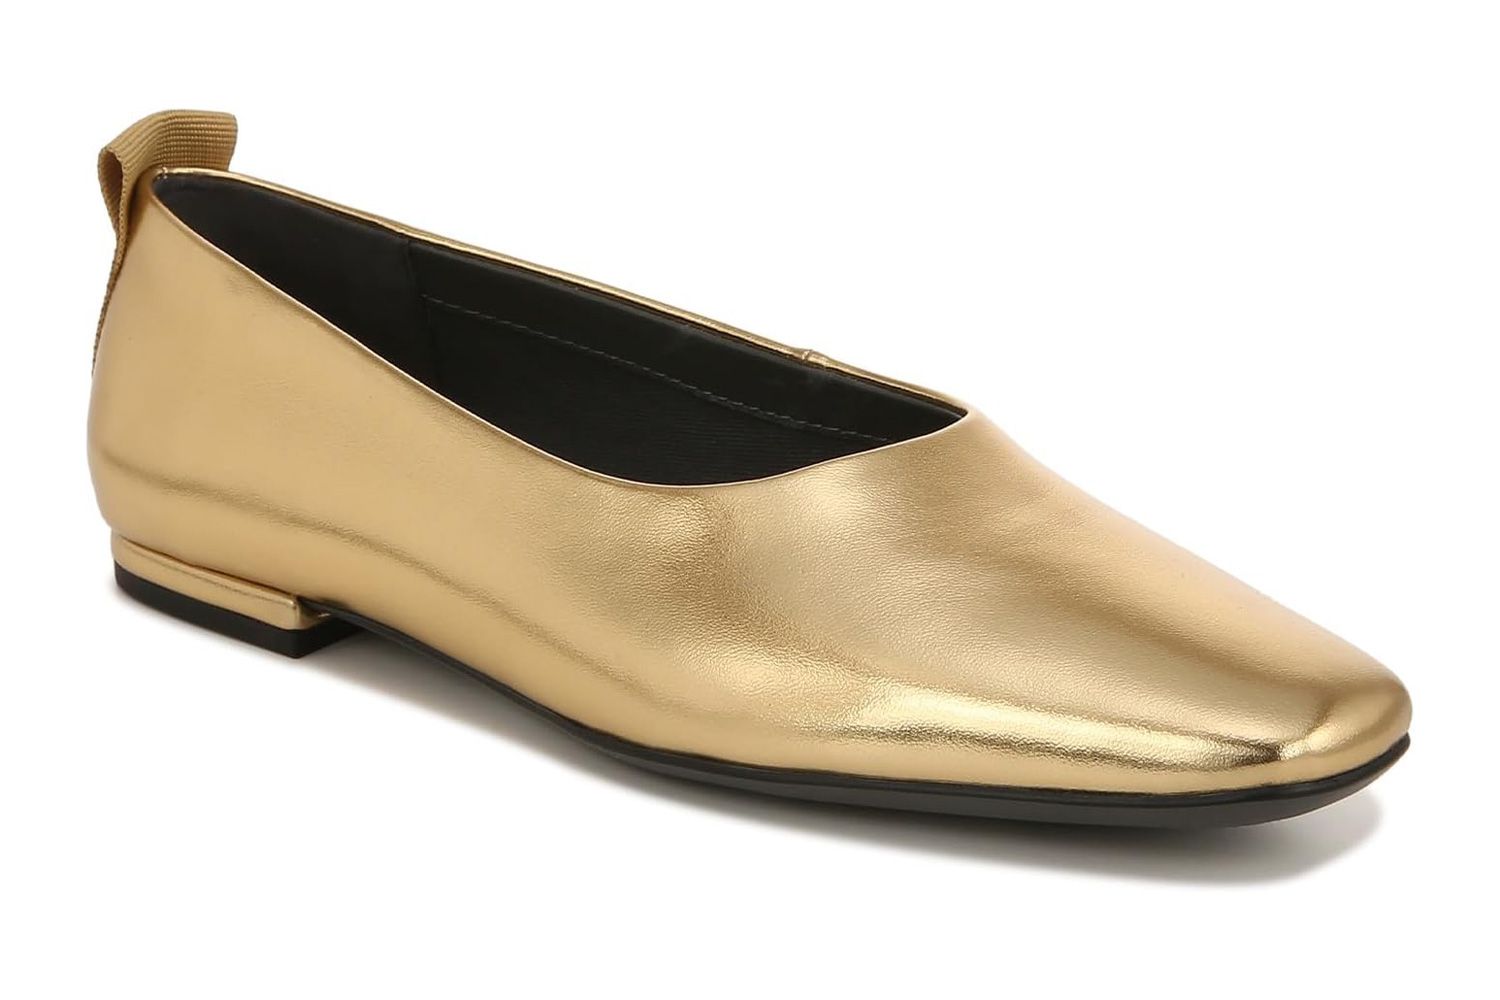 Franco Sarto Women's Vana Slip on Ballet Flat Loafer